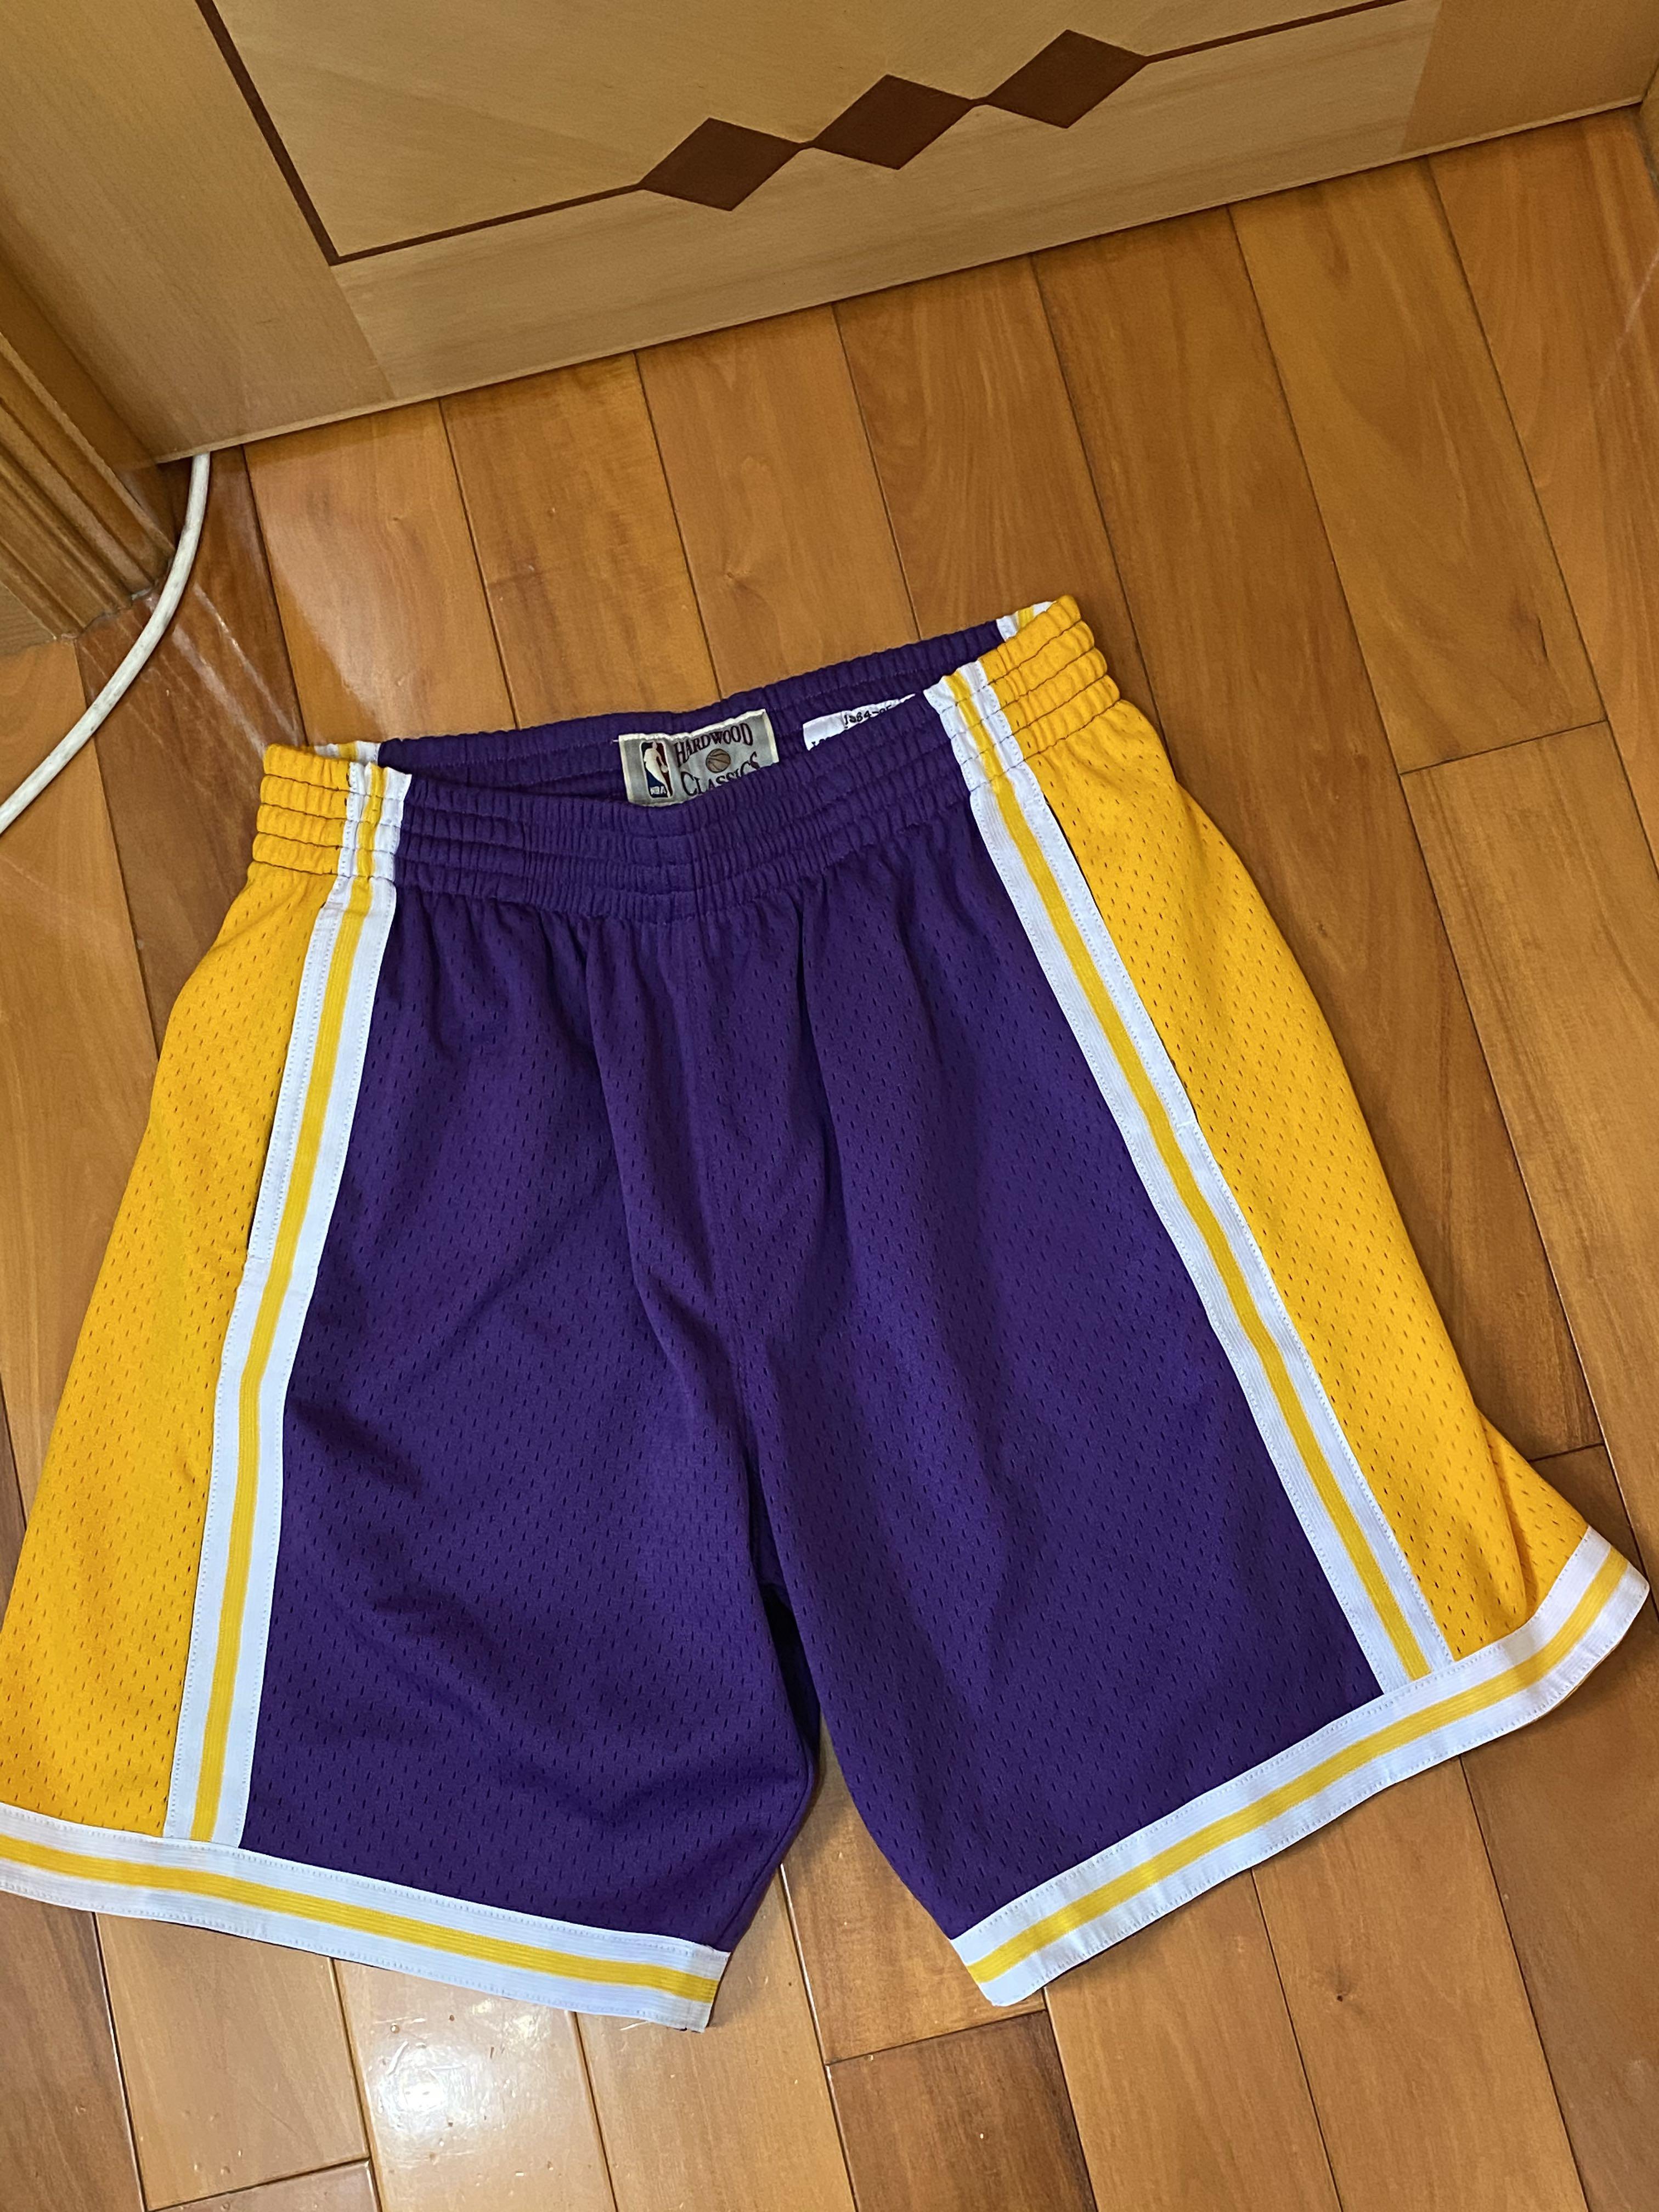 kobe purple shorts